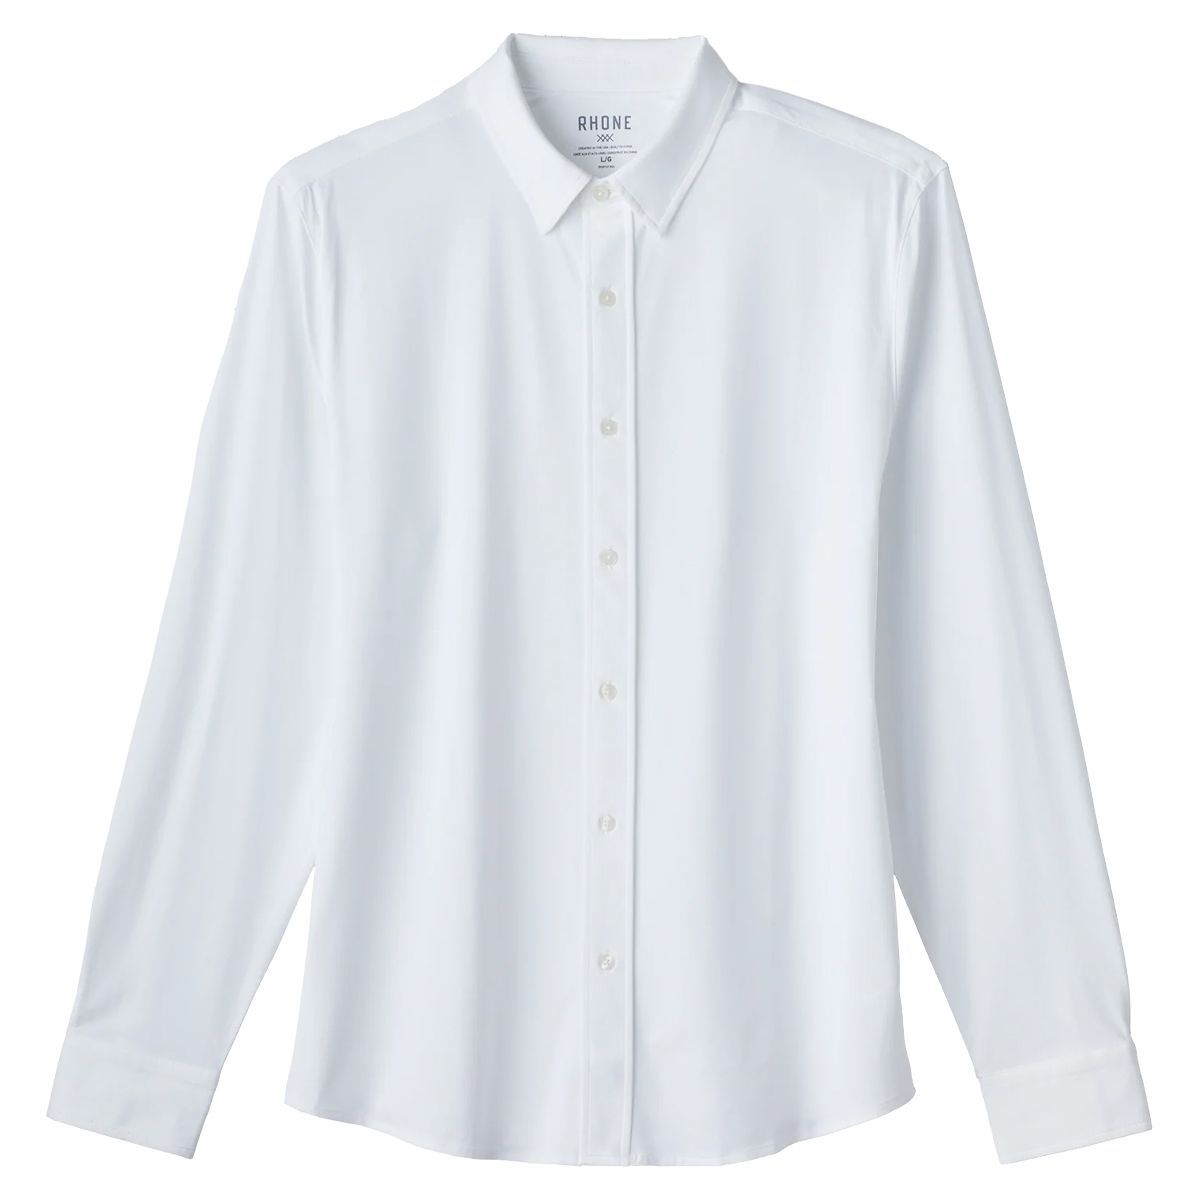 white dress shirt for men